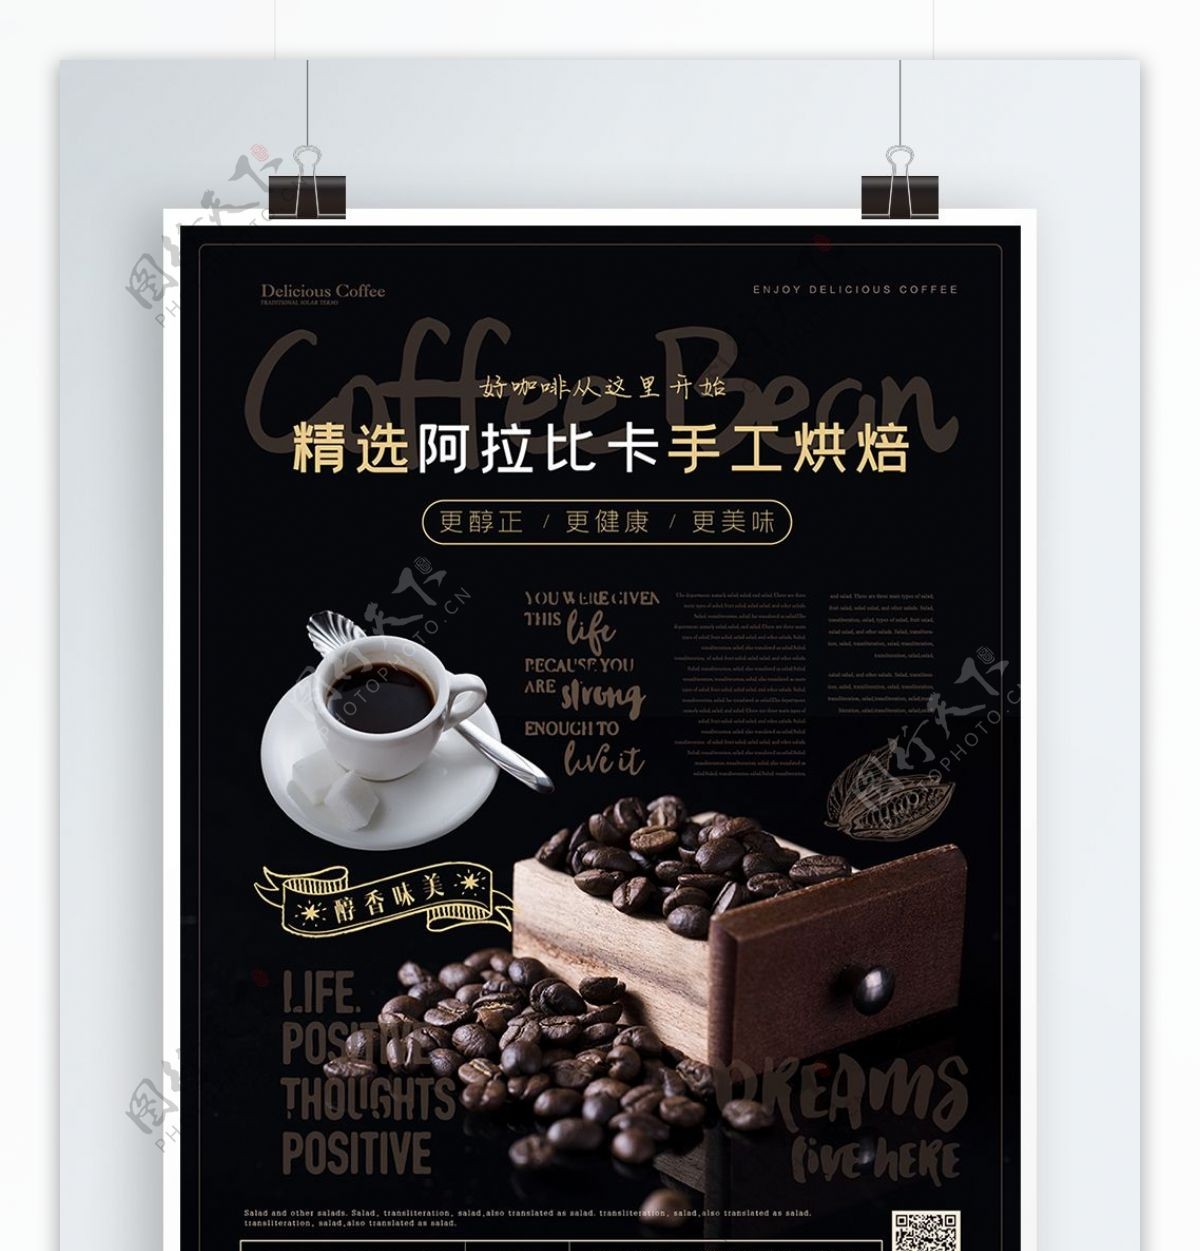 简约风咖啡豆咖啡主题海报